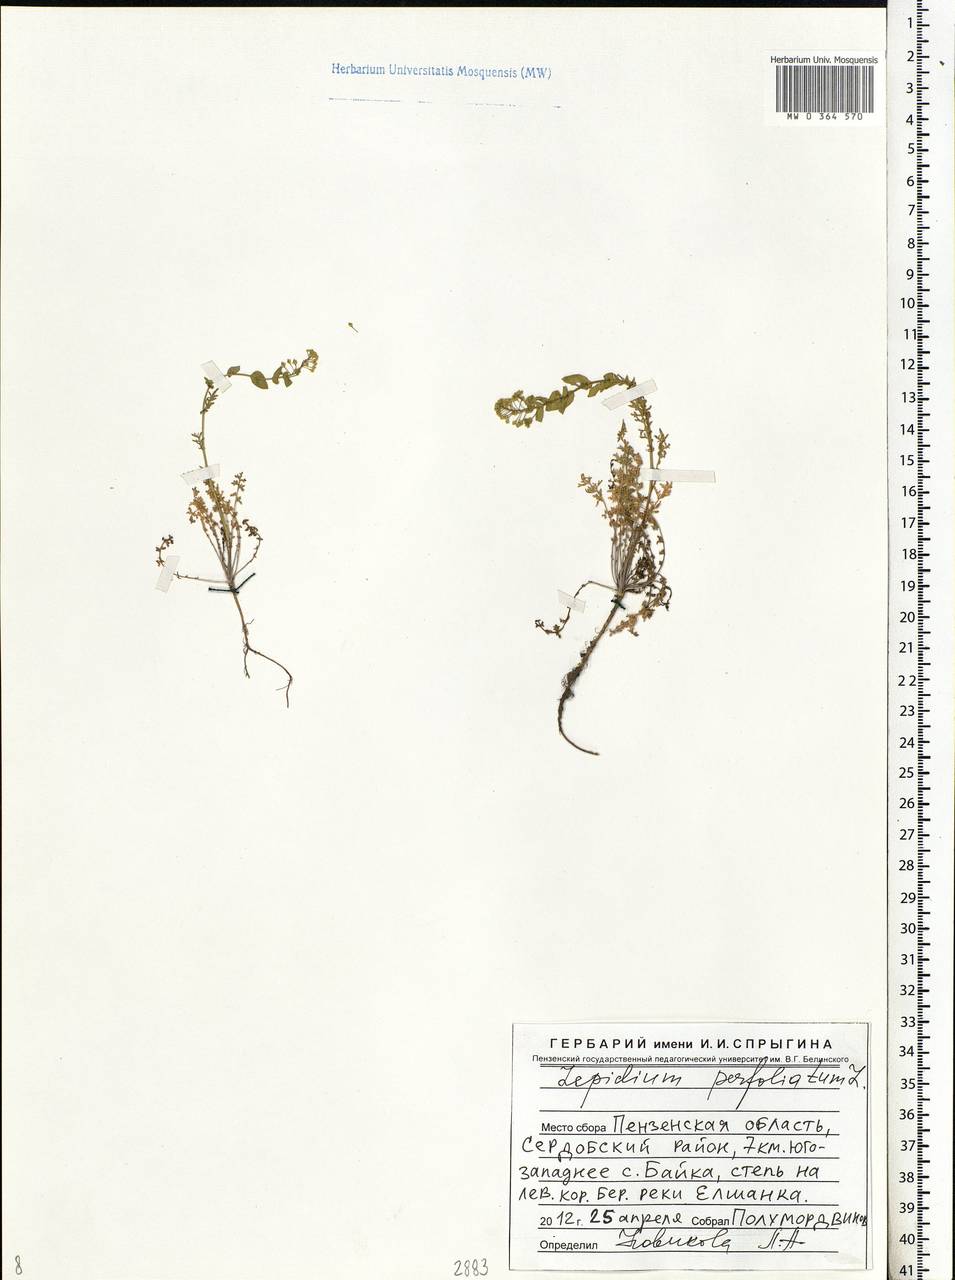 Lepidium perfoliatum L., Eastern Europe, Middle Volga region (E8) (Russia)